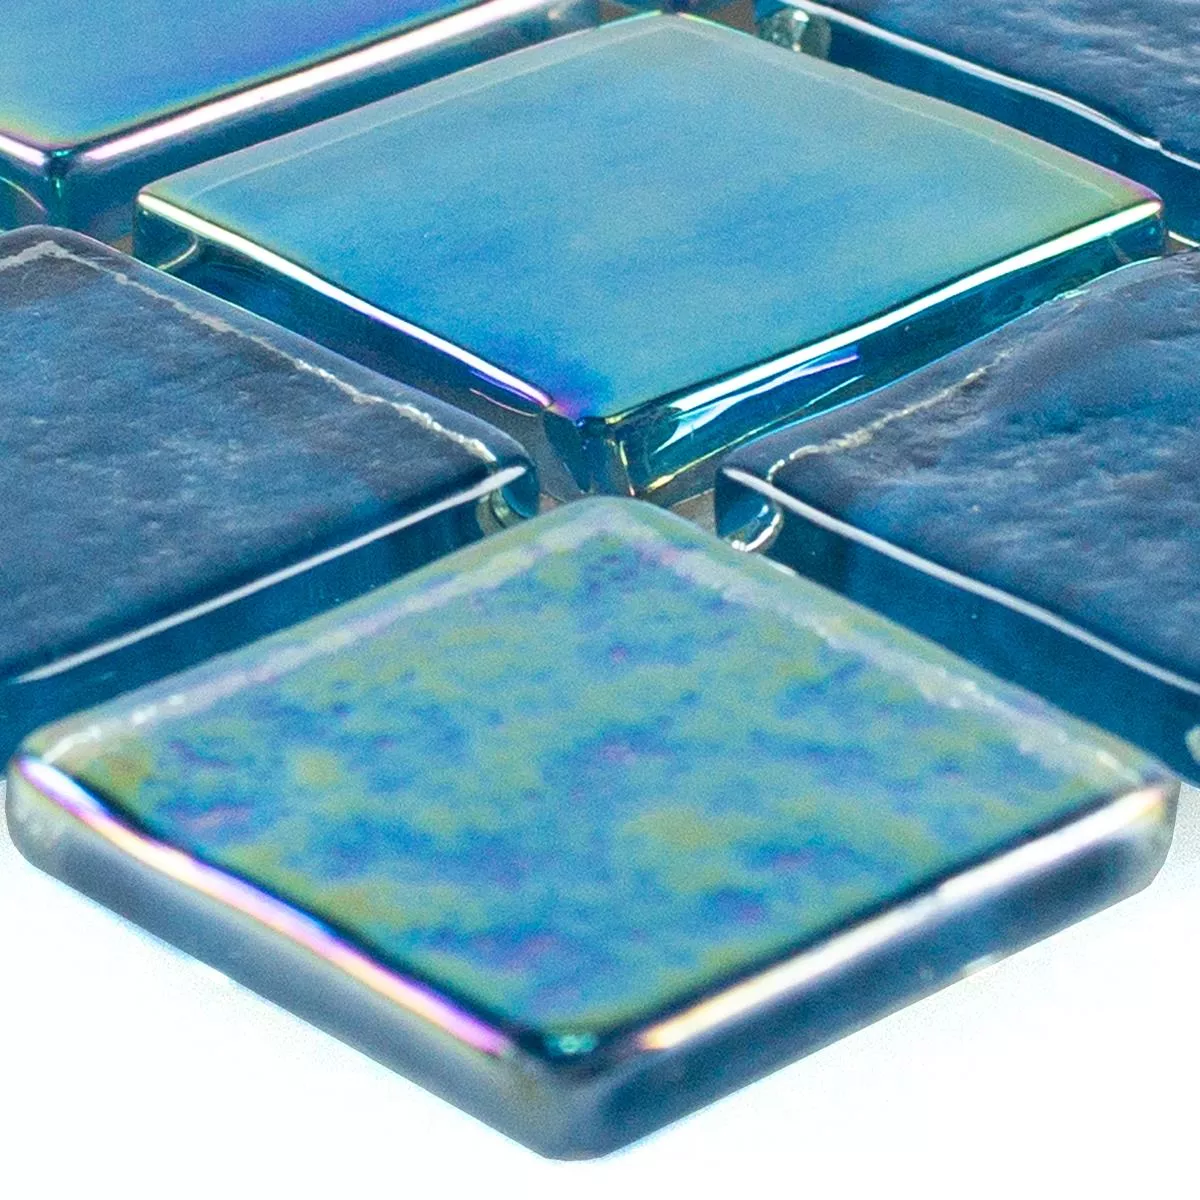 Muestra Mosaico de Cristal Azulejos Efecto Nacarado Carlos Azul 23